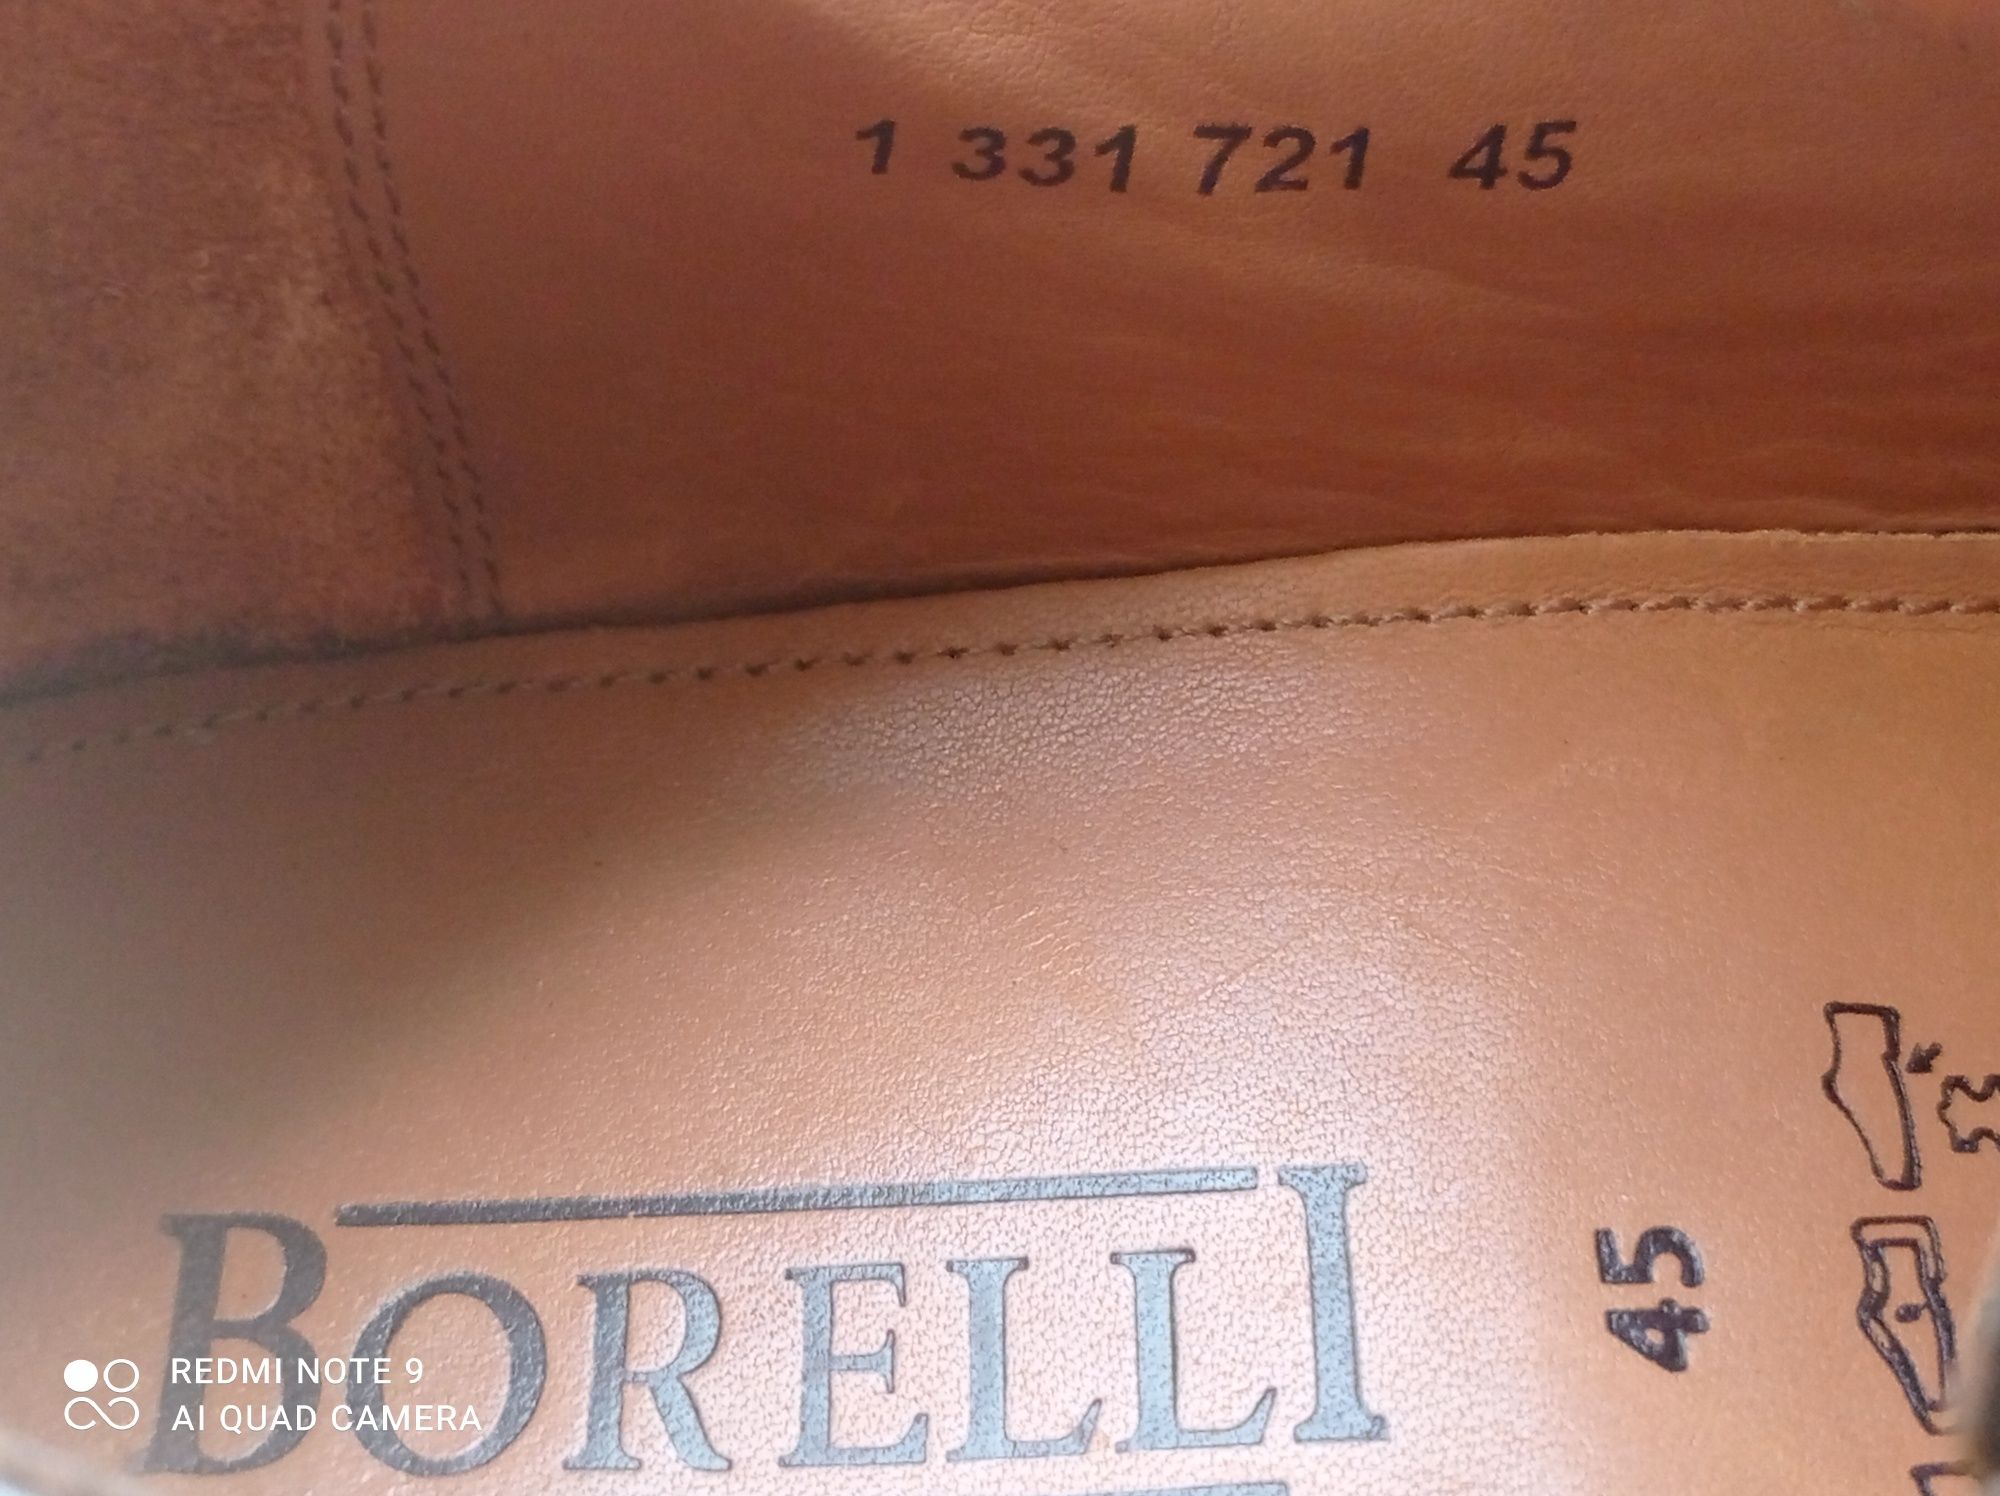 Туфлі з натуральної шкіри Borelli (Італія) р 45